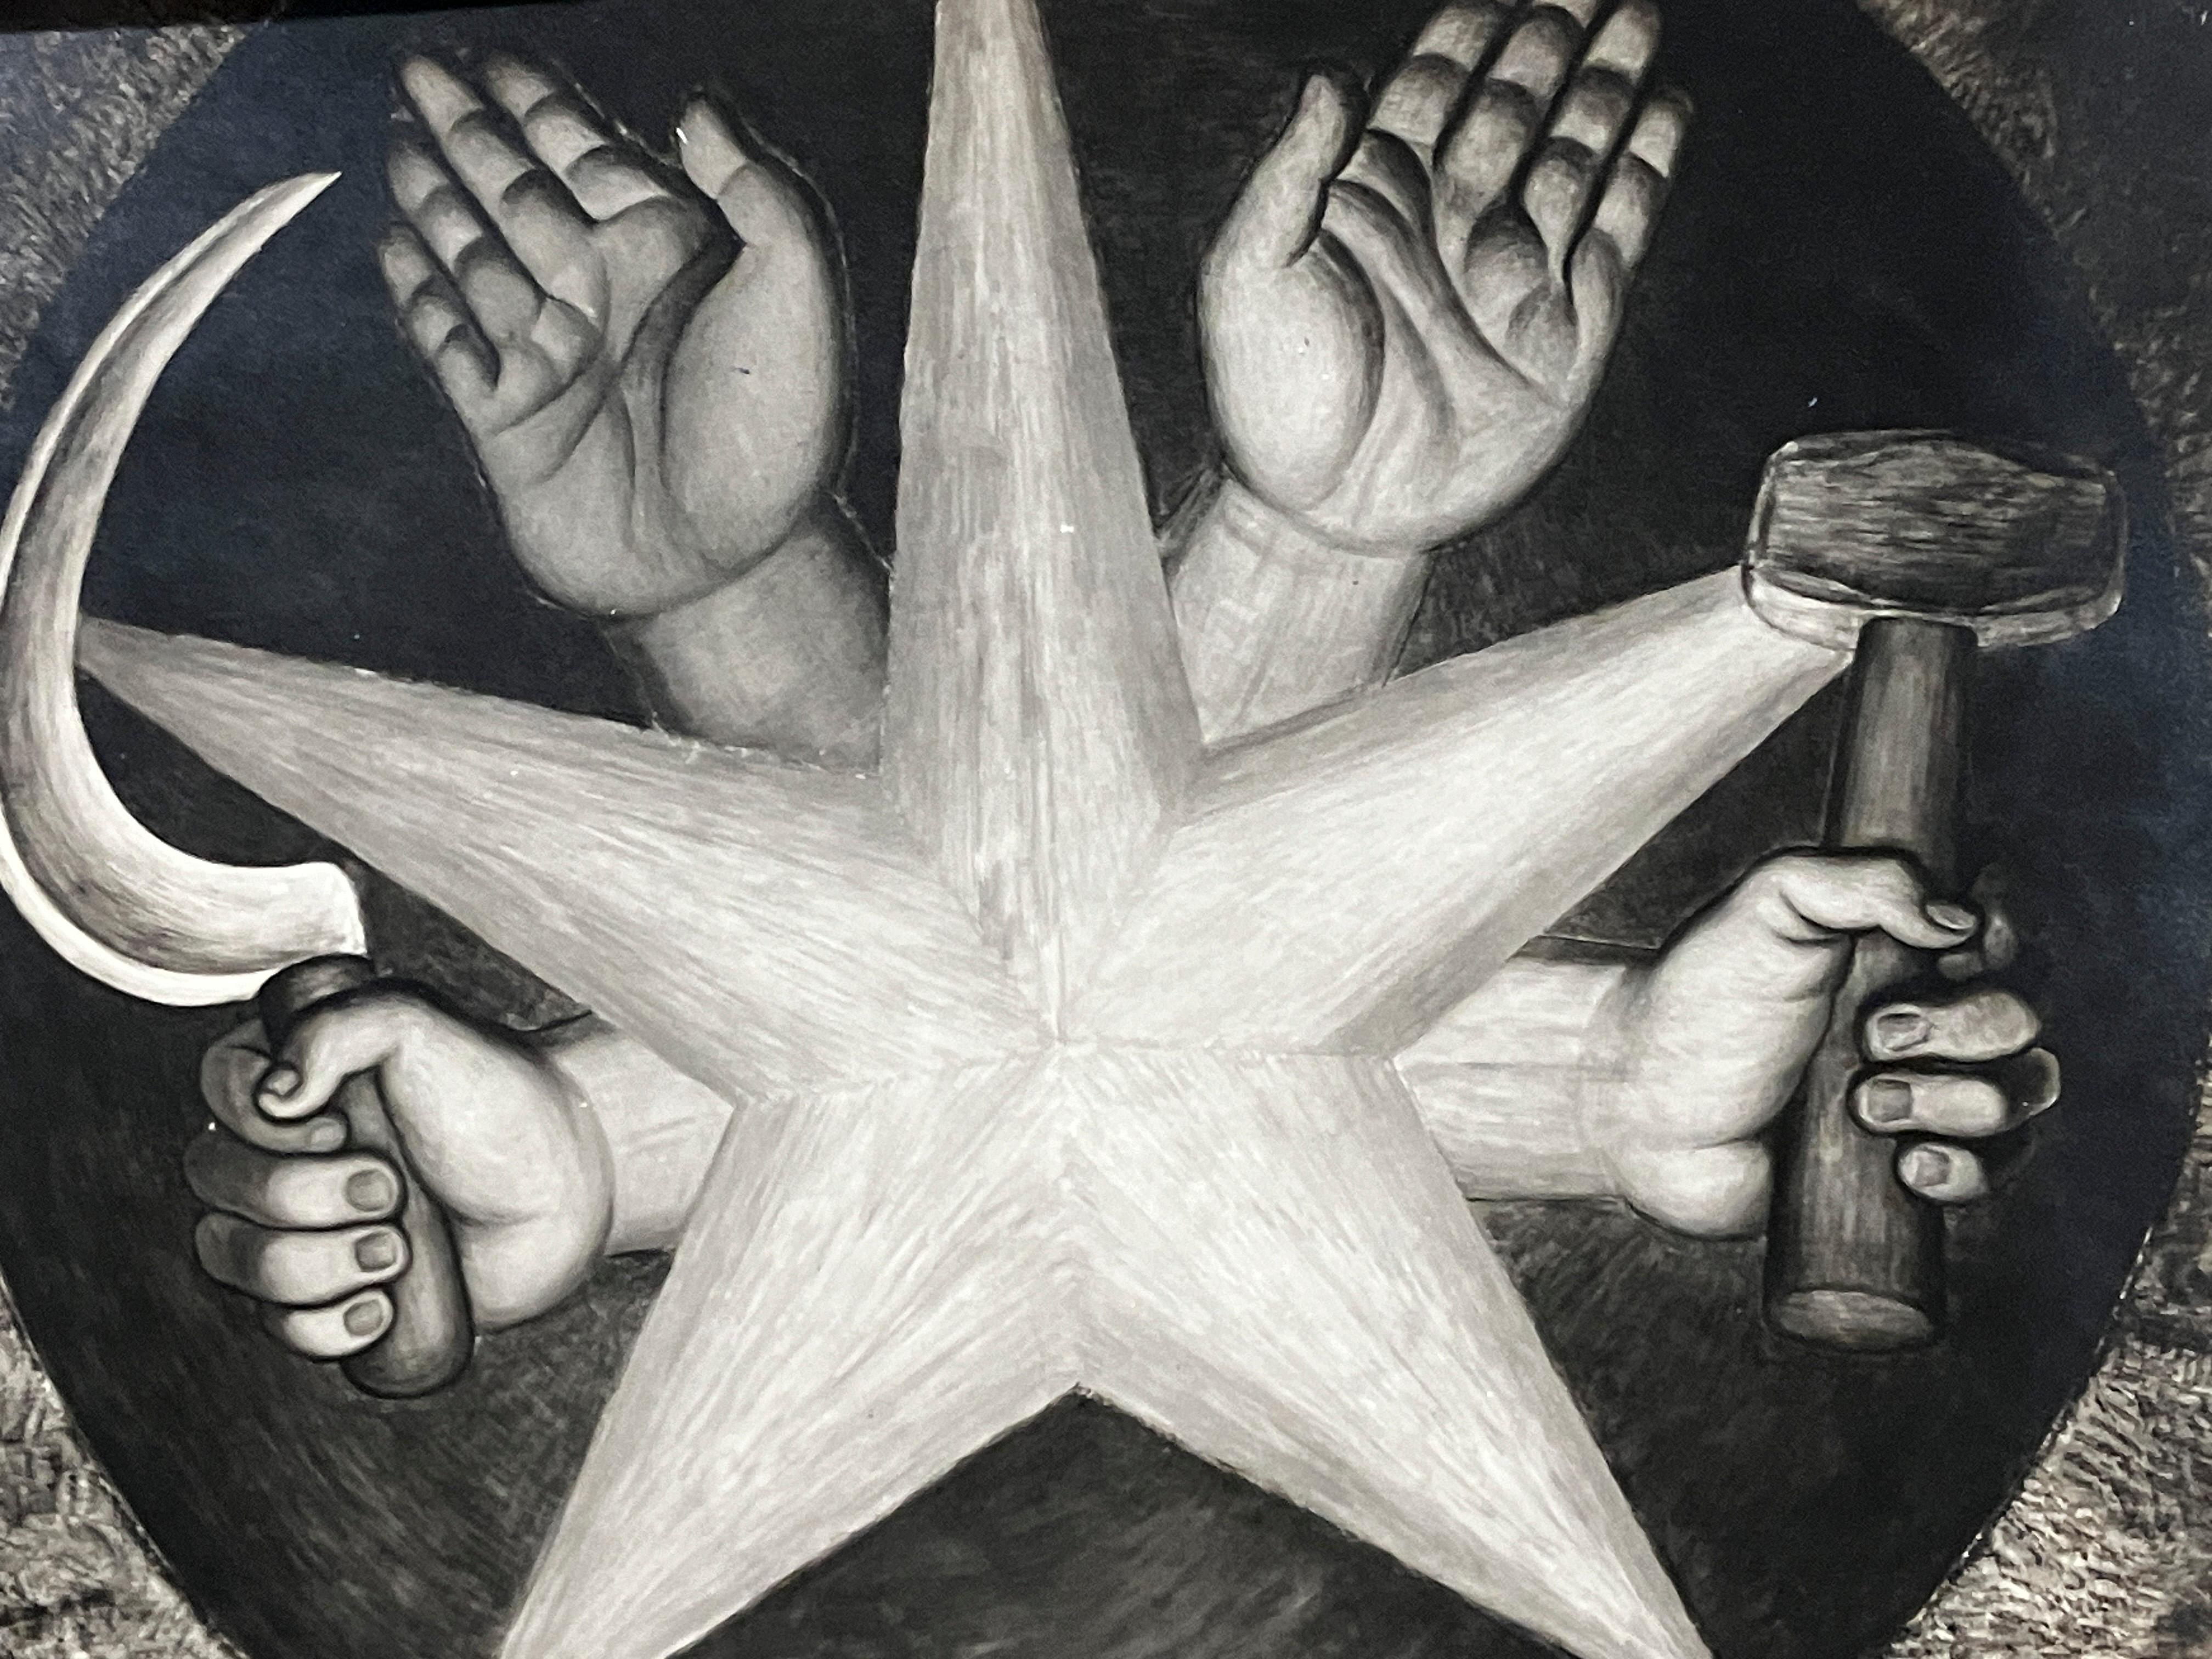 Ein Original-Silbergelatineabzug der Fotografin Tina Modotti aus den 1920er Jahren, der ein Fresko des Künstlers Diego Rivera zeigt.  Das Foto ist auf der Rückseite mit dem Stempel "Photographs-Tina Modotti Mexico, D.F." versehen.  Archivmattiert